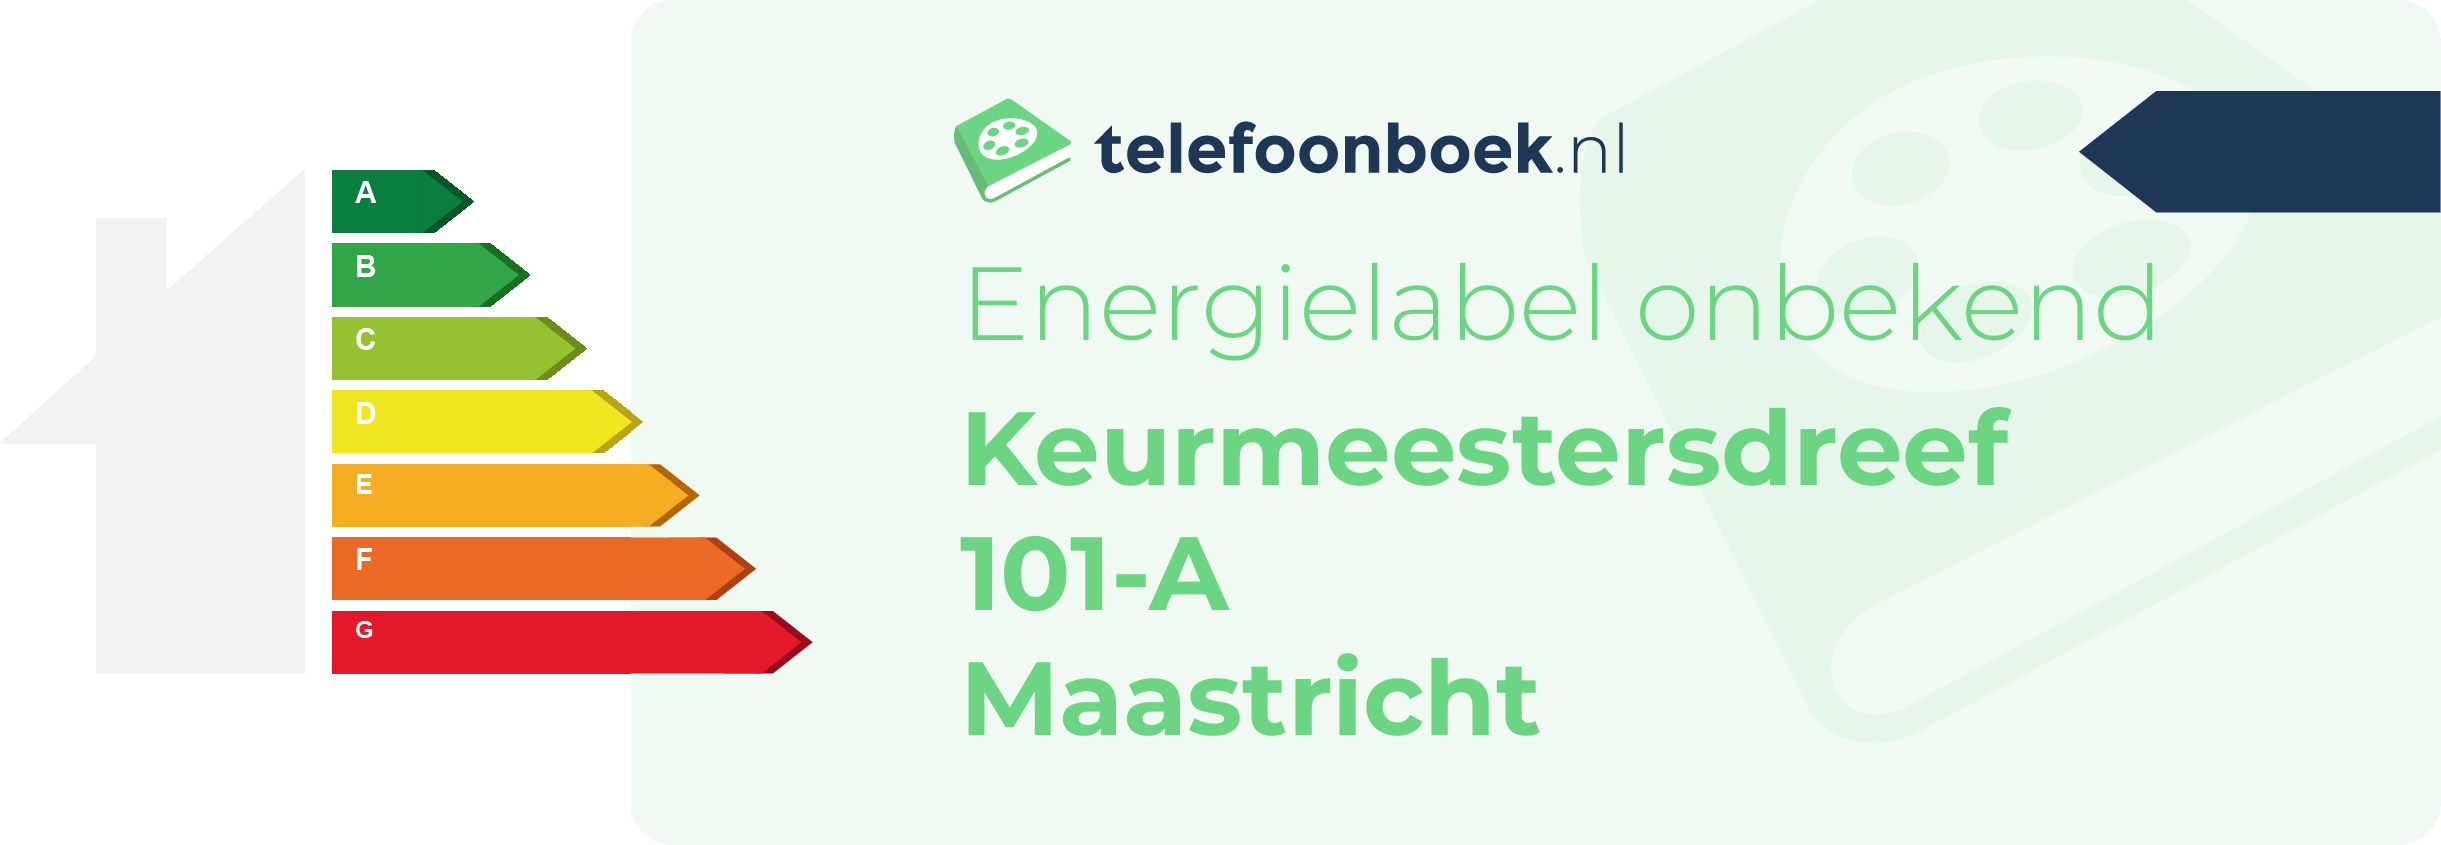 Energielabel Keurmeestersdreef 101-A Maastricht